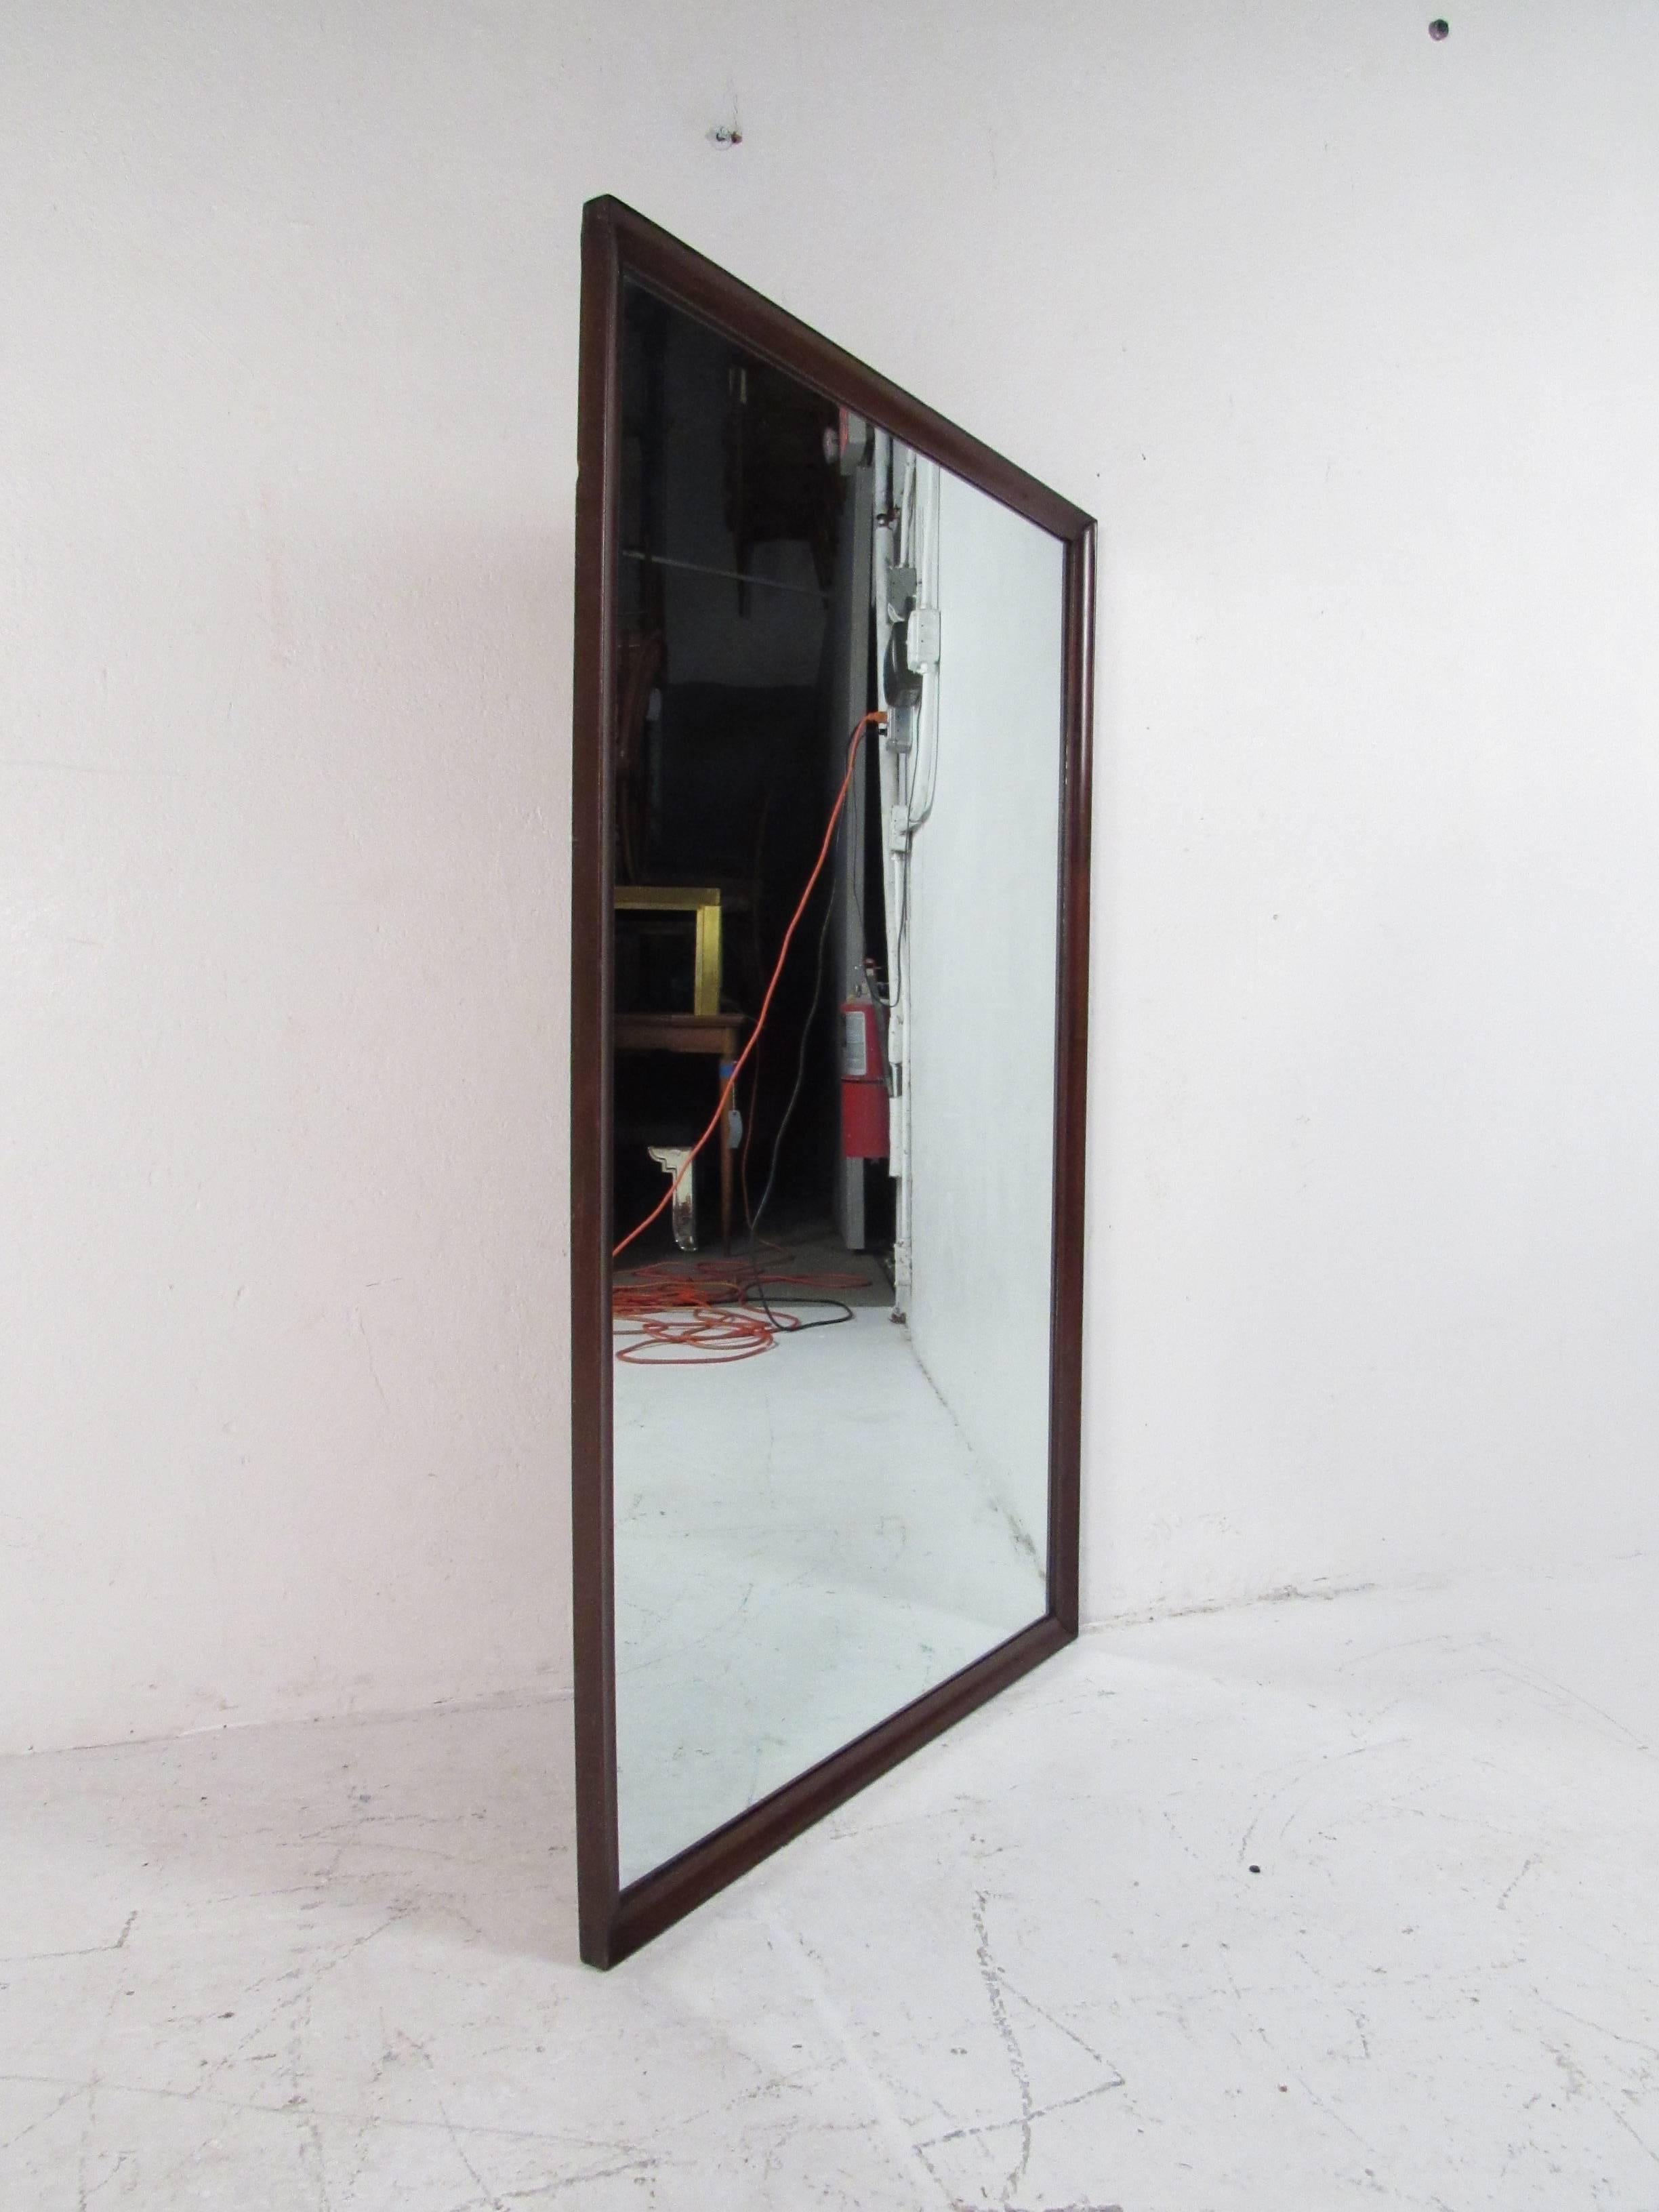 Un beau miroir moderne vintage avec un cadre en noyer foncé. Design épuré avec une forme rectangulaire et des bords biseautés. Cette pièce élégante du milieu du siècle est parfaite comme miroir mural ou fixée à l'arrière d'une commode. Veuillez